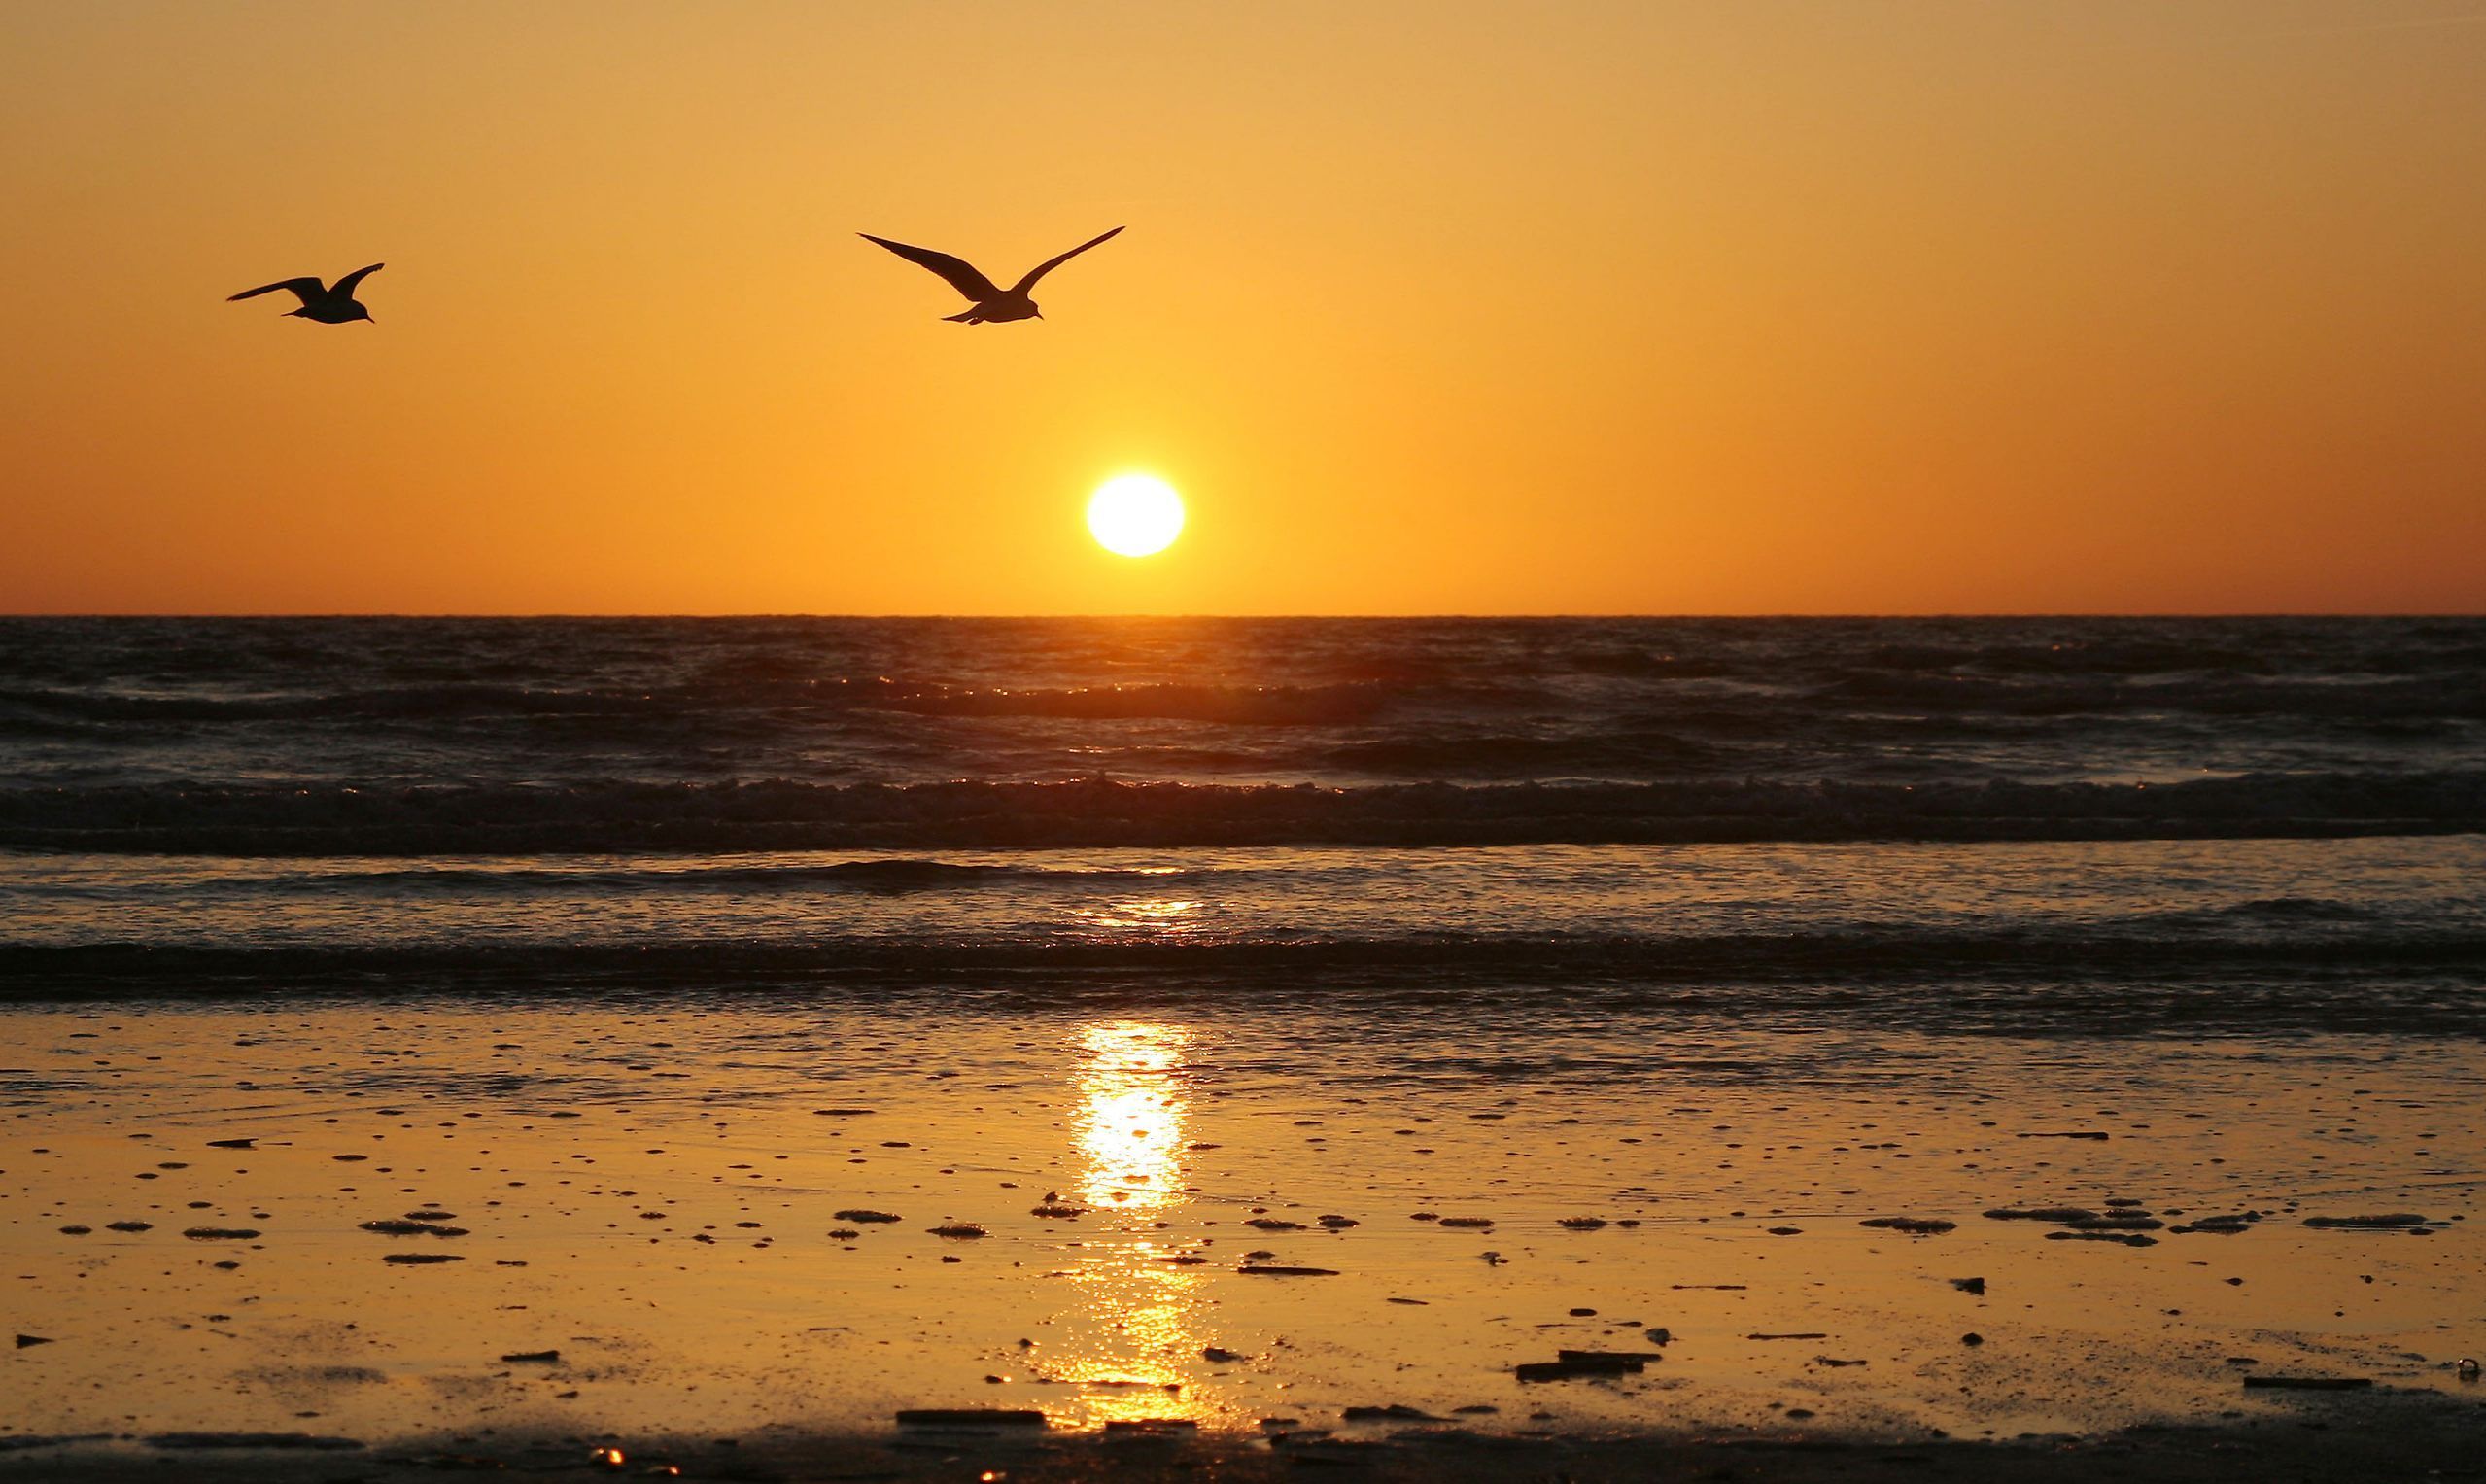 Sunrise Background Image